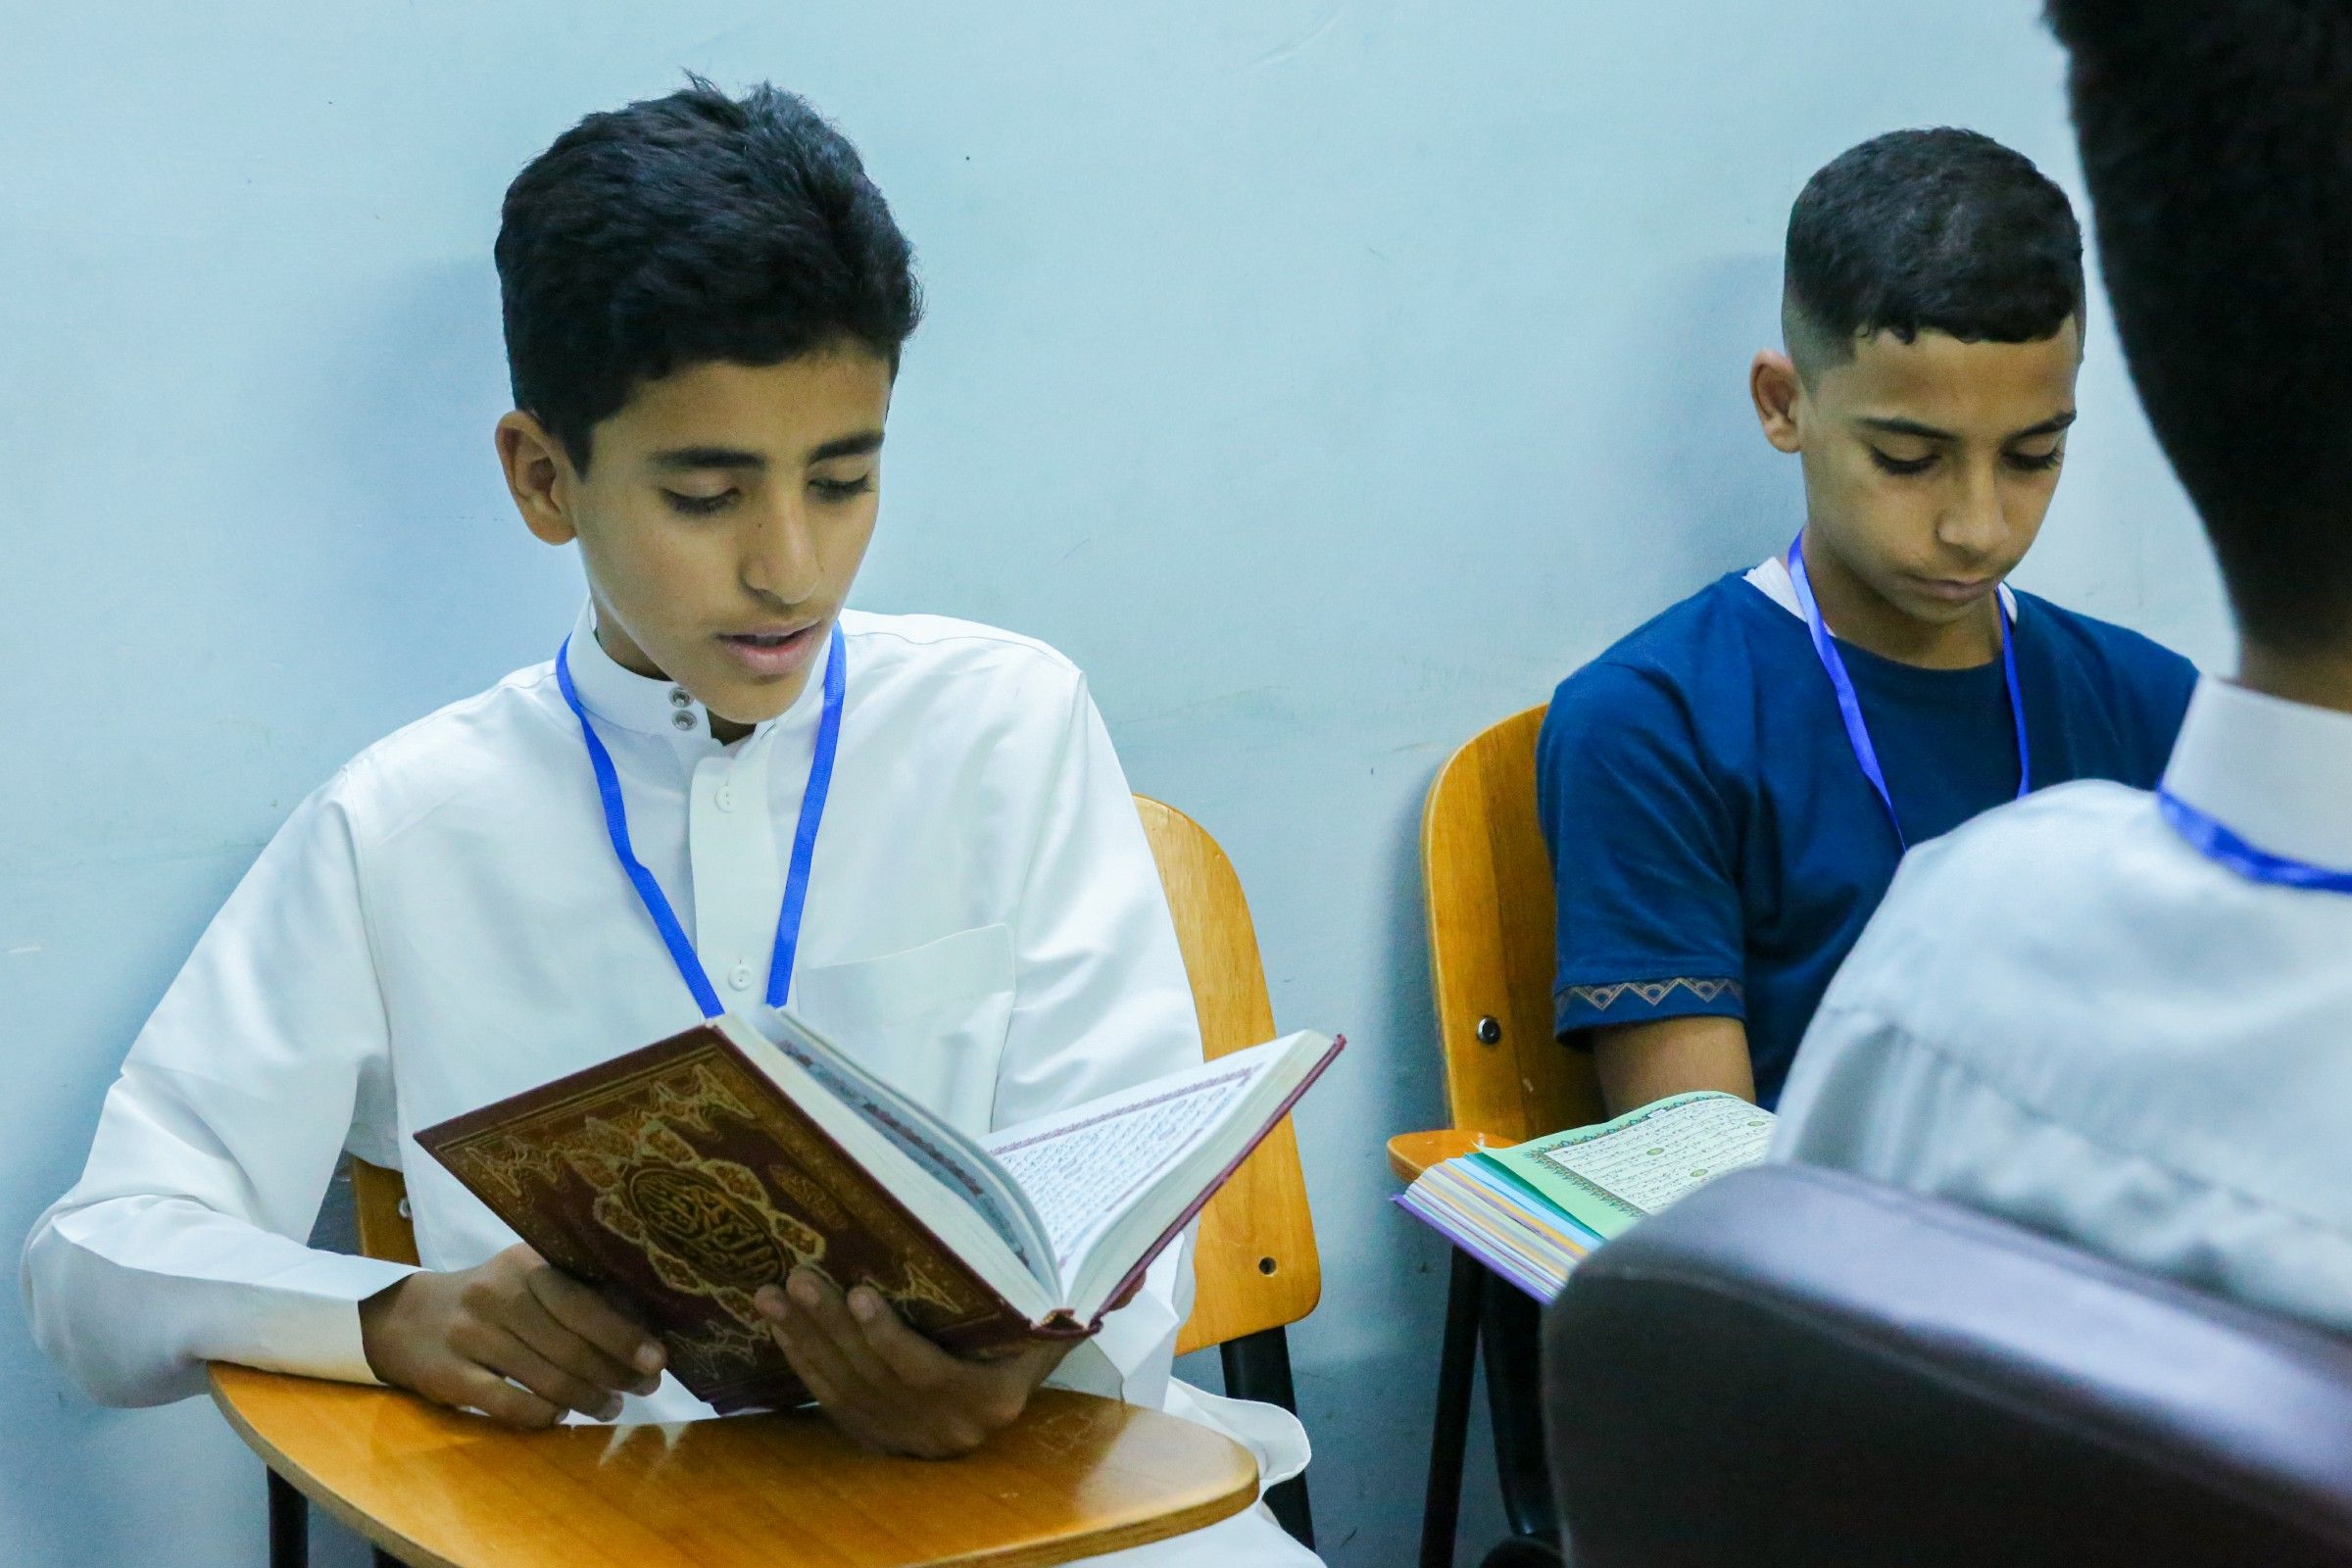 وحدة التحفيظ في معهد القرآن الكريم تطلق العمل بمشروع الحافظ الماهر